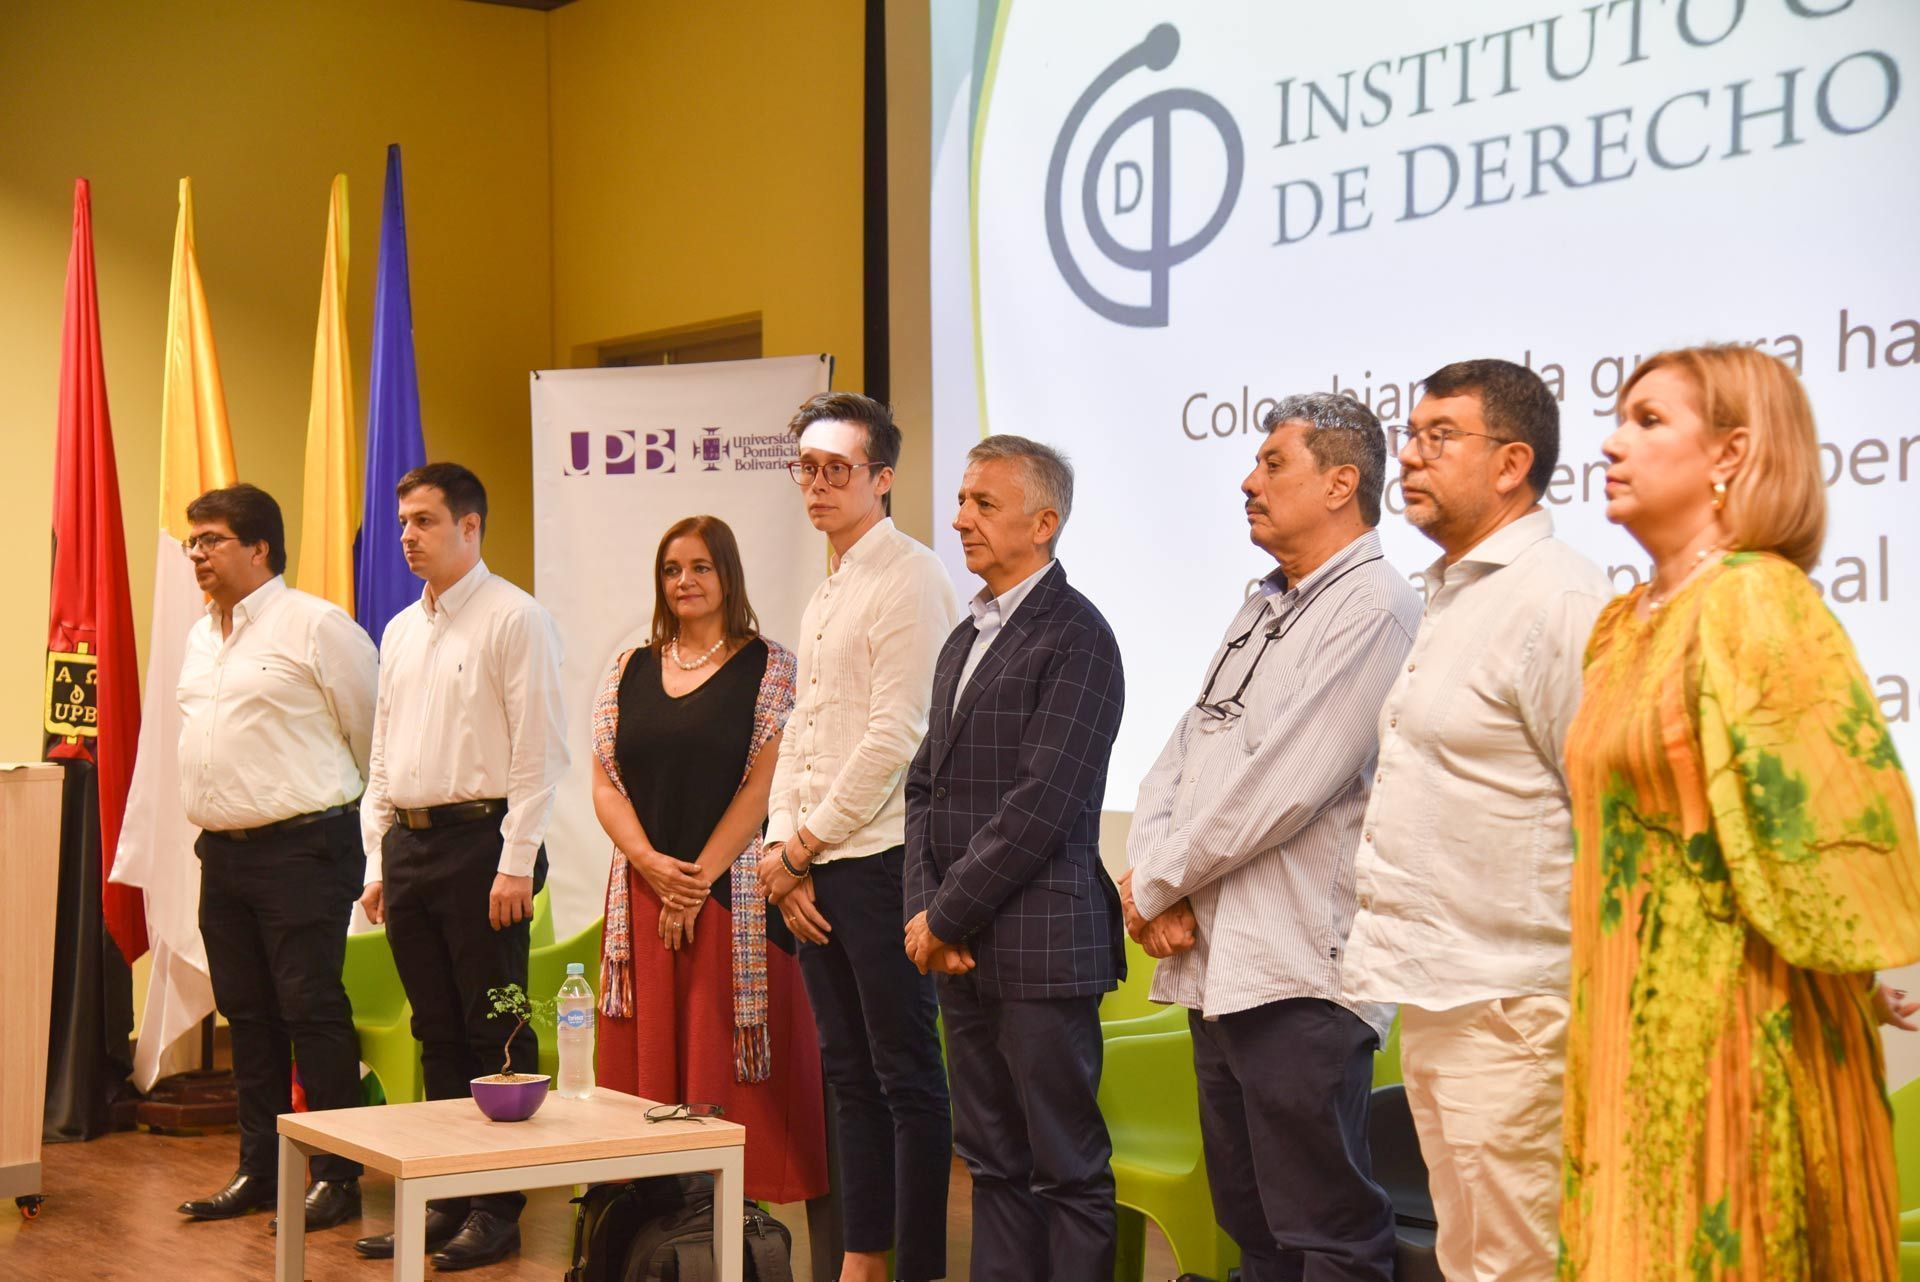 Directivas Instituto Colombiano de Derecho Procesal, rector de la UPB Montería y ponentes durante la instalación del evento.